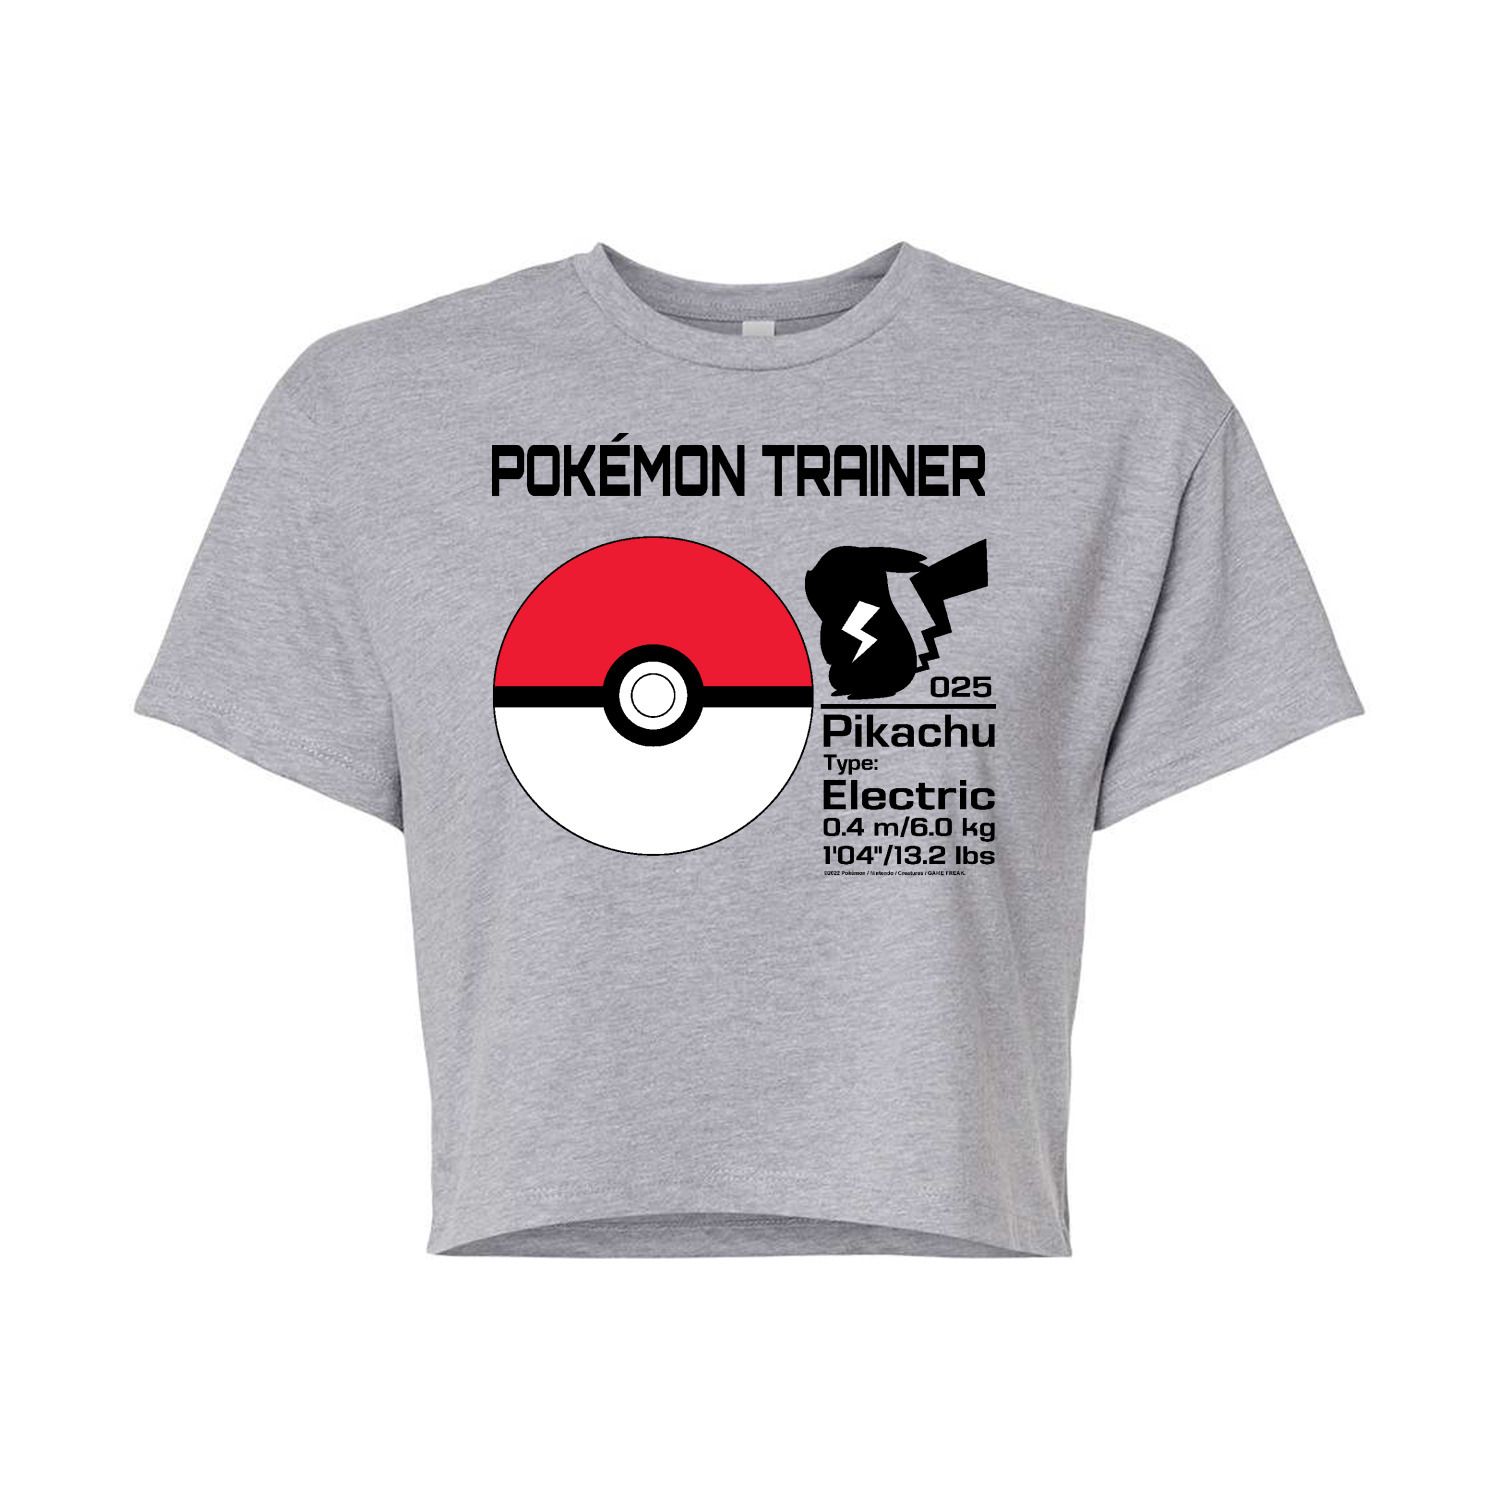 Укороченная футболка с рисунком Pokémon для подростков Pokémon Trainer Licensed Character